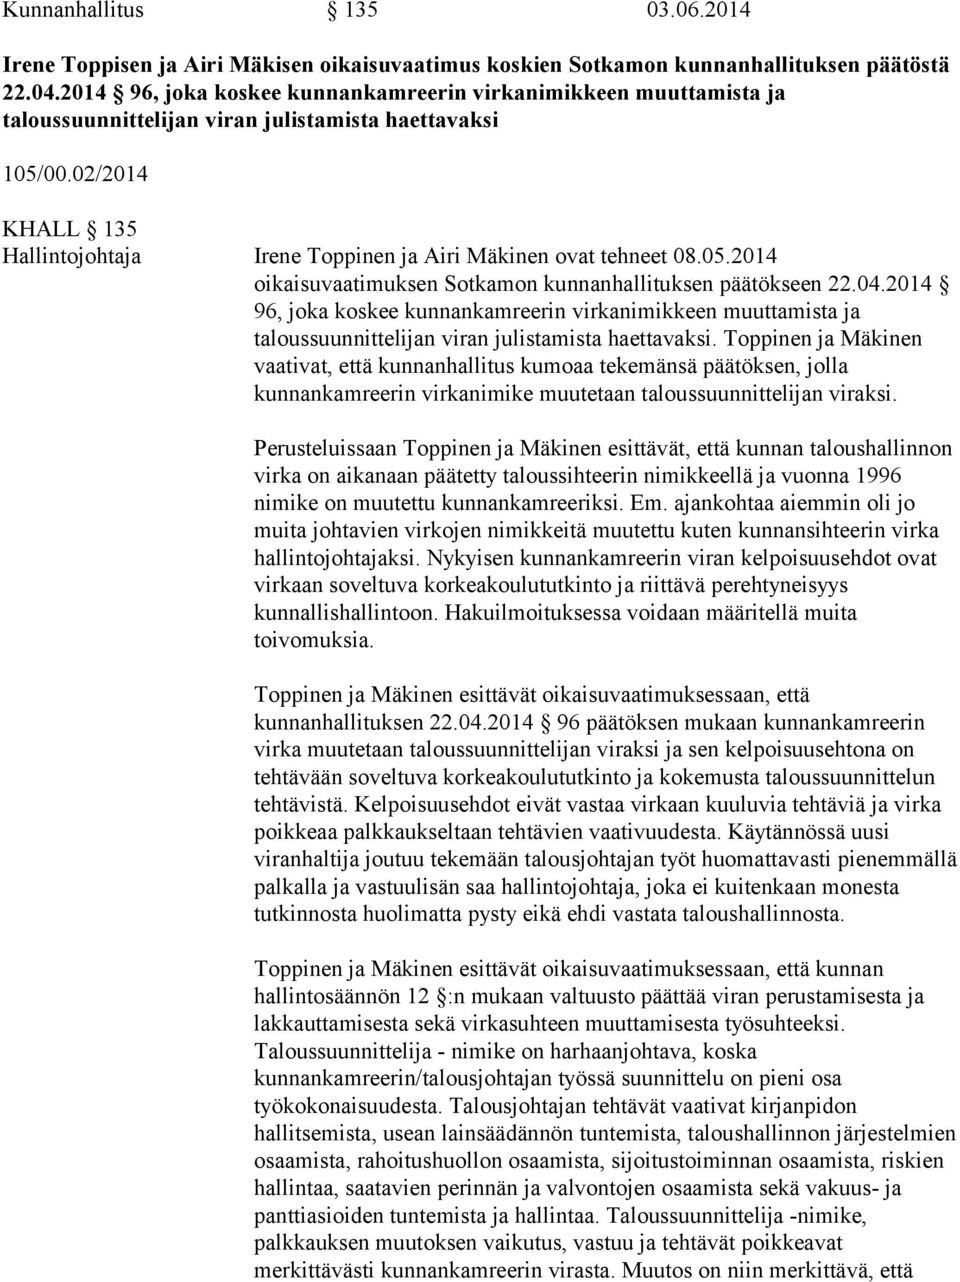 02/2014 KHALL 135 Hallintojohtaja Irene Toppinen ja Airi Mäkinen ovat tehneet 08.05.2014 oikaisuvaatimuksen Sotkamon kunnanhallituksen päätökseen 22.04.